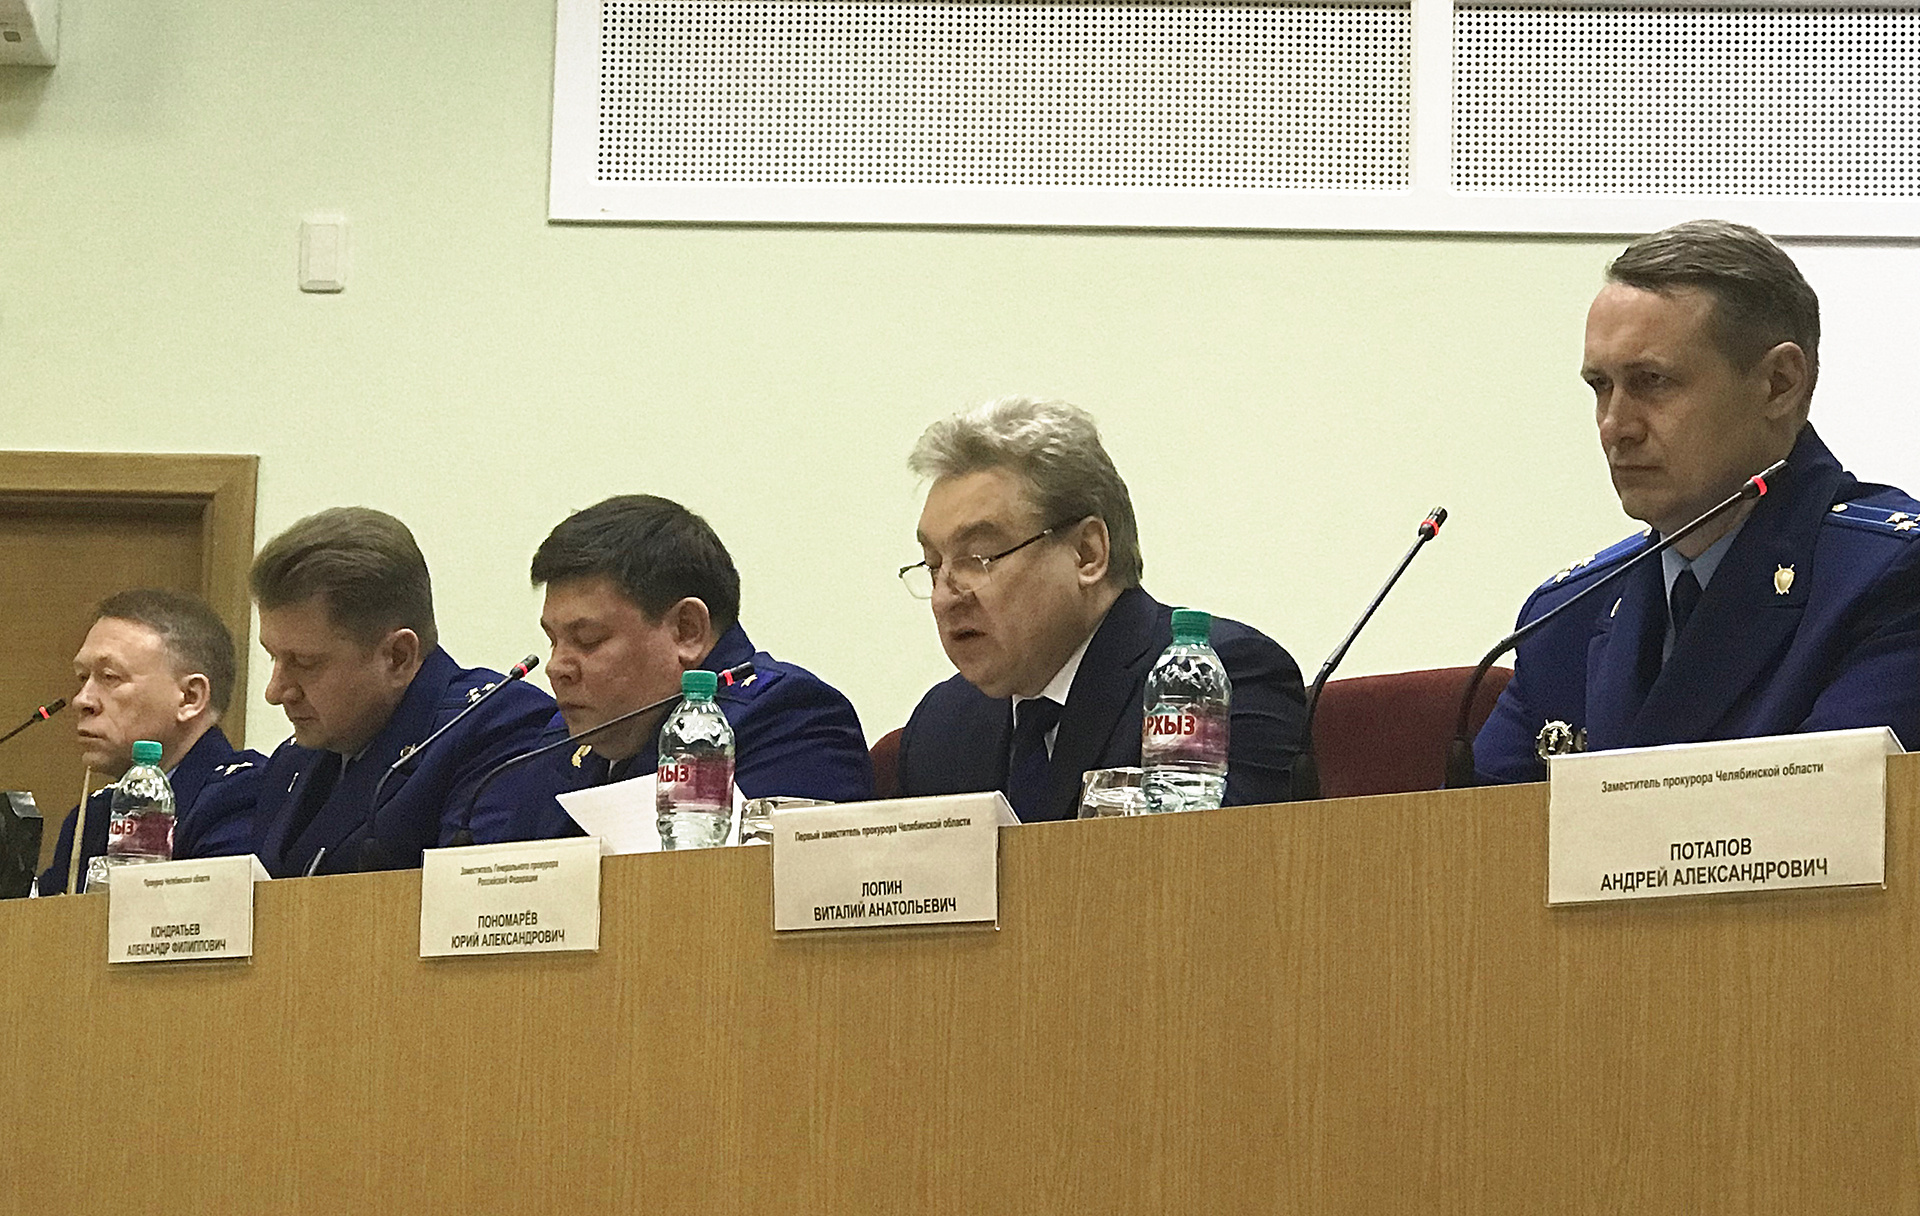 Юрий Пономарёв приехал в Челябинск на совещание, узнав, что речь пойдёт о проблемах дольщиков